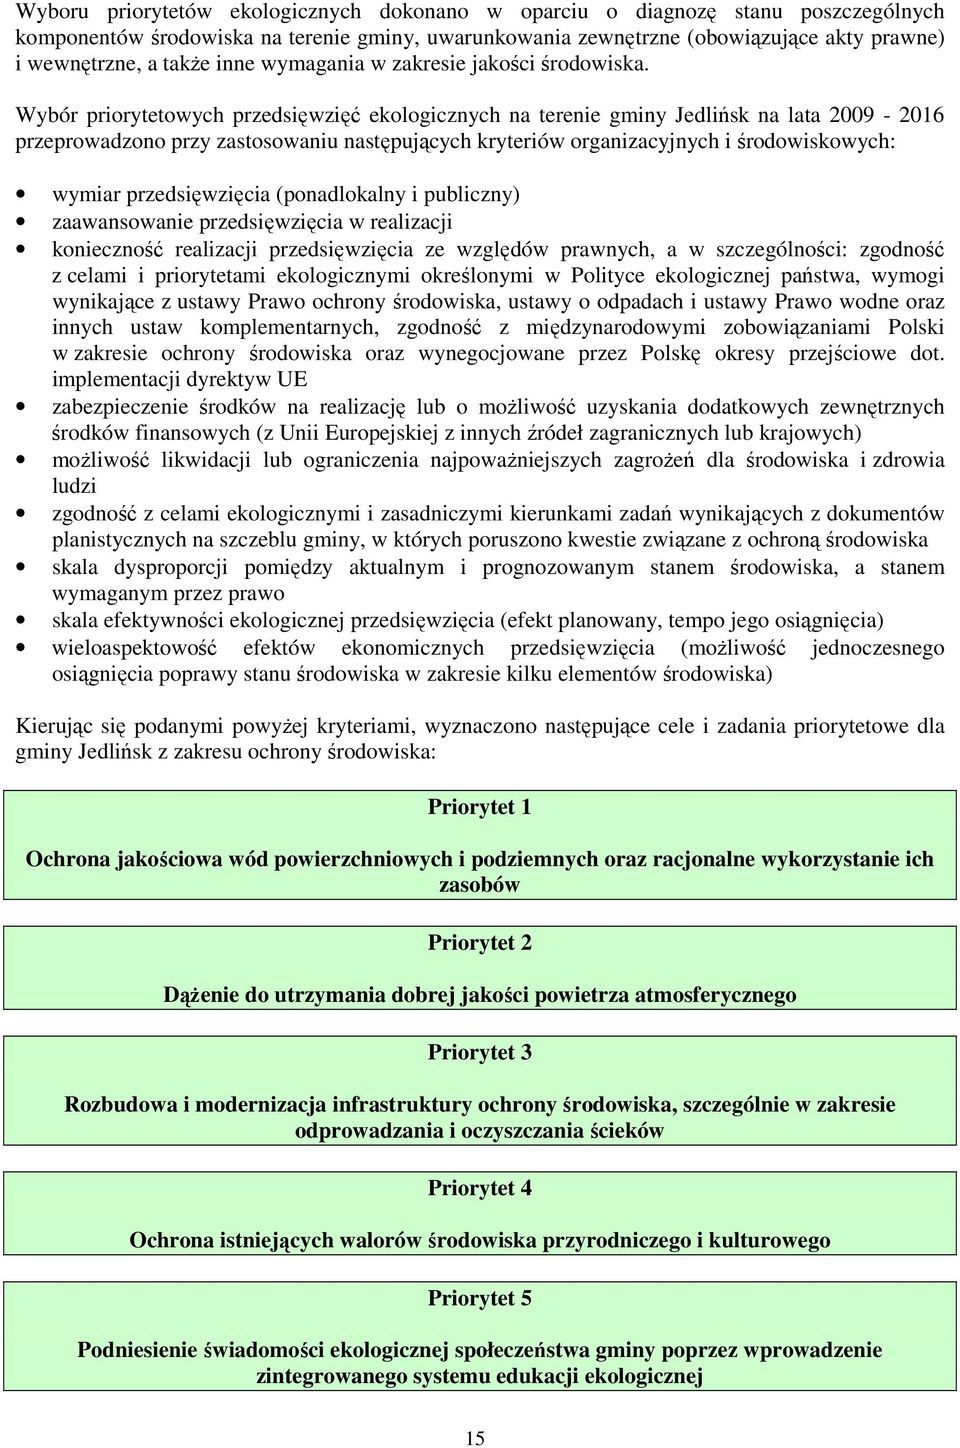 Wybór priorytetowych przedsięwzięć ekologicznych na terenie gminy Jedlińsk na lata 2009-2016 przeprowadzono przy zastosowaniu następujących kryteriów organizacyjnych i środowiskowych: wymiar